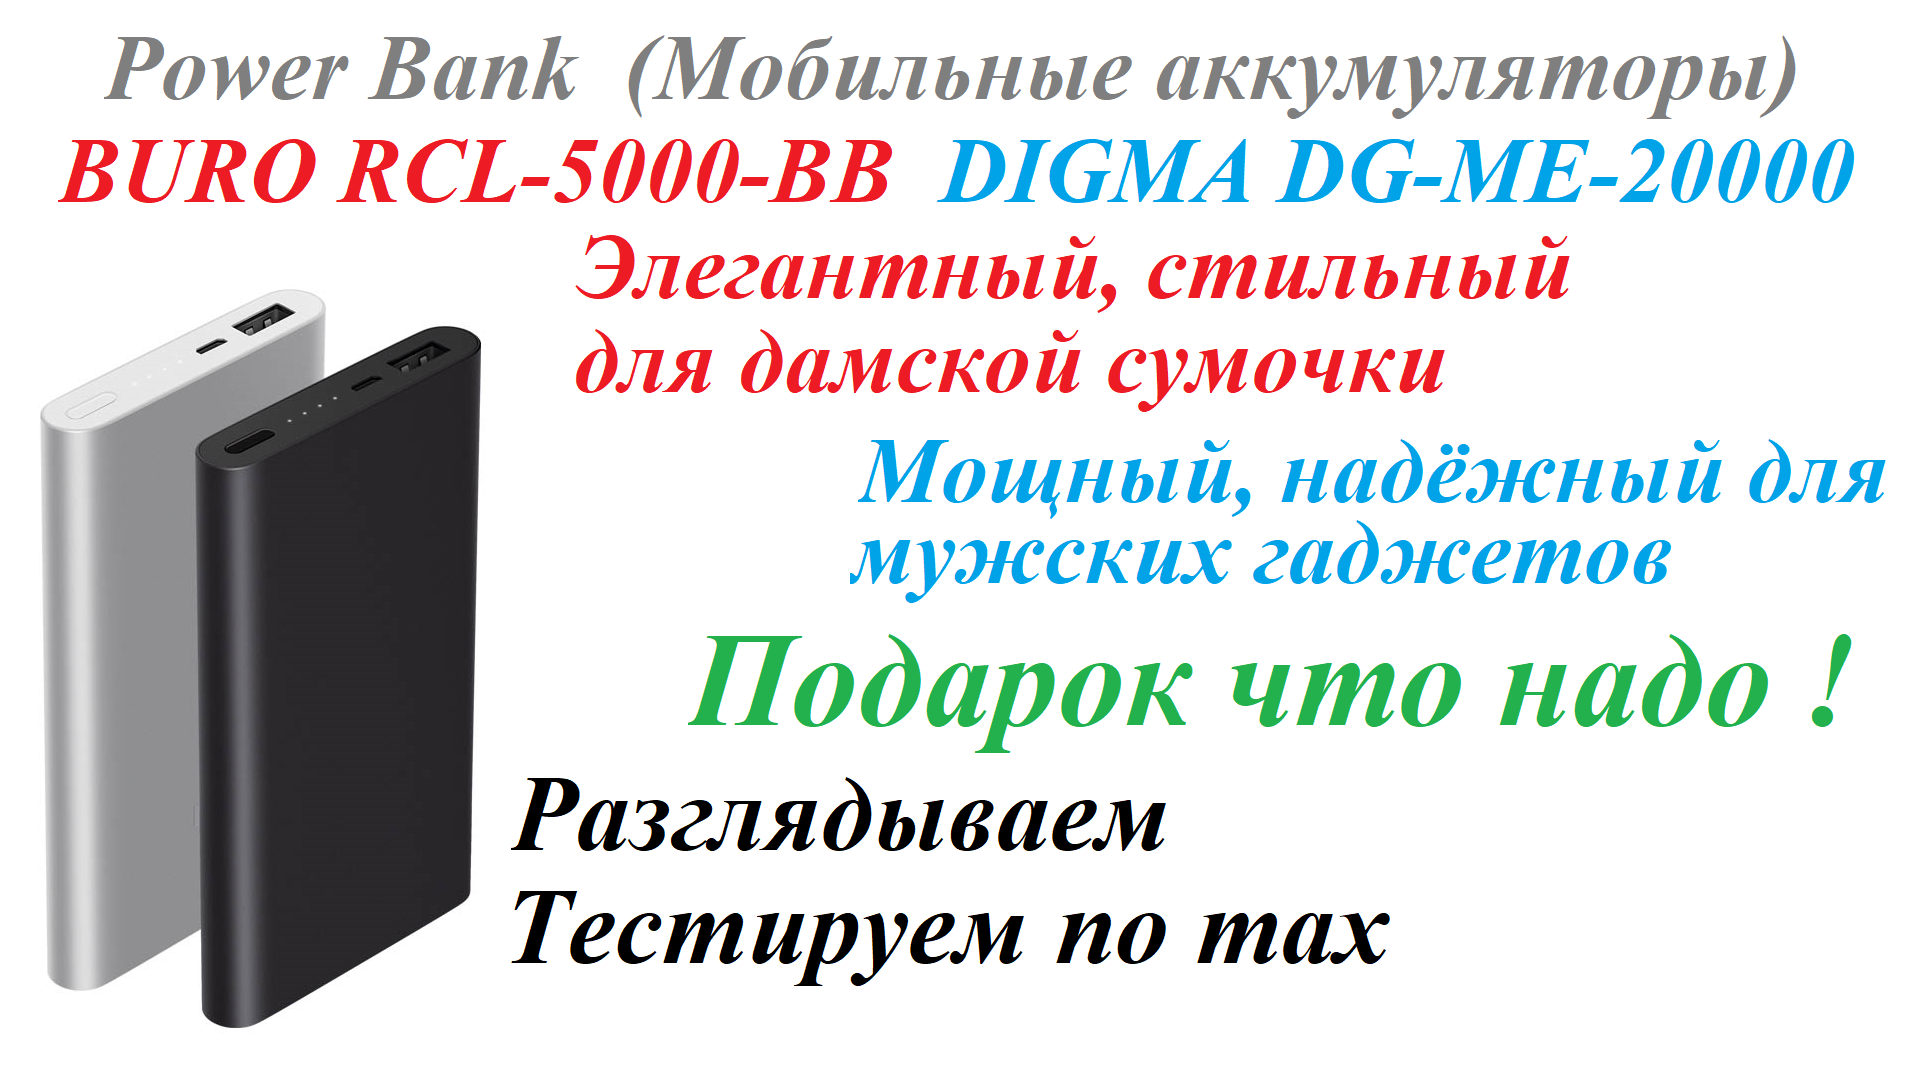 Power Bank Мобильные аккумуляторы BURO RCL-5000-BB и DIGMA DG-ME-20000. Тестируем под max нагрузкой